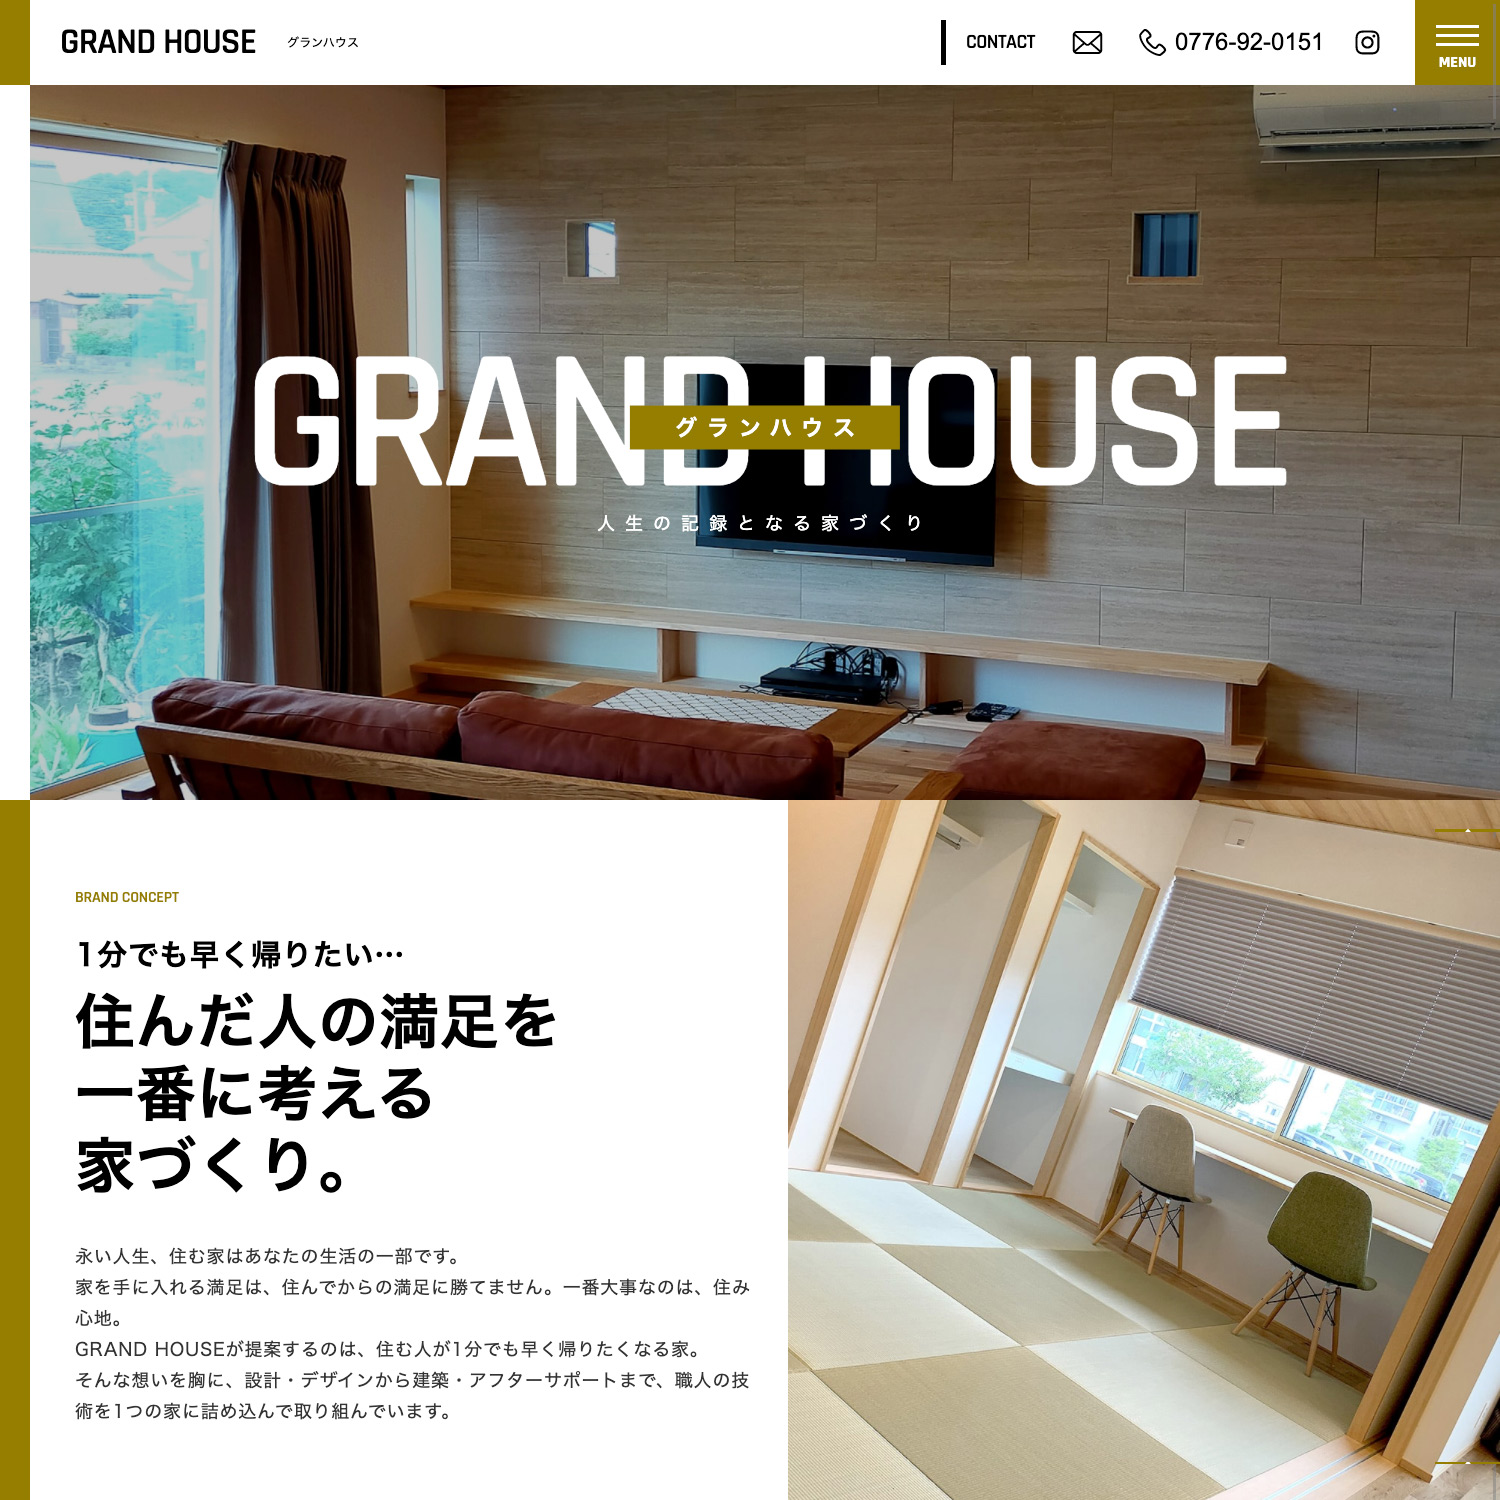 GRAND HOUSE Webサイト公開